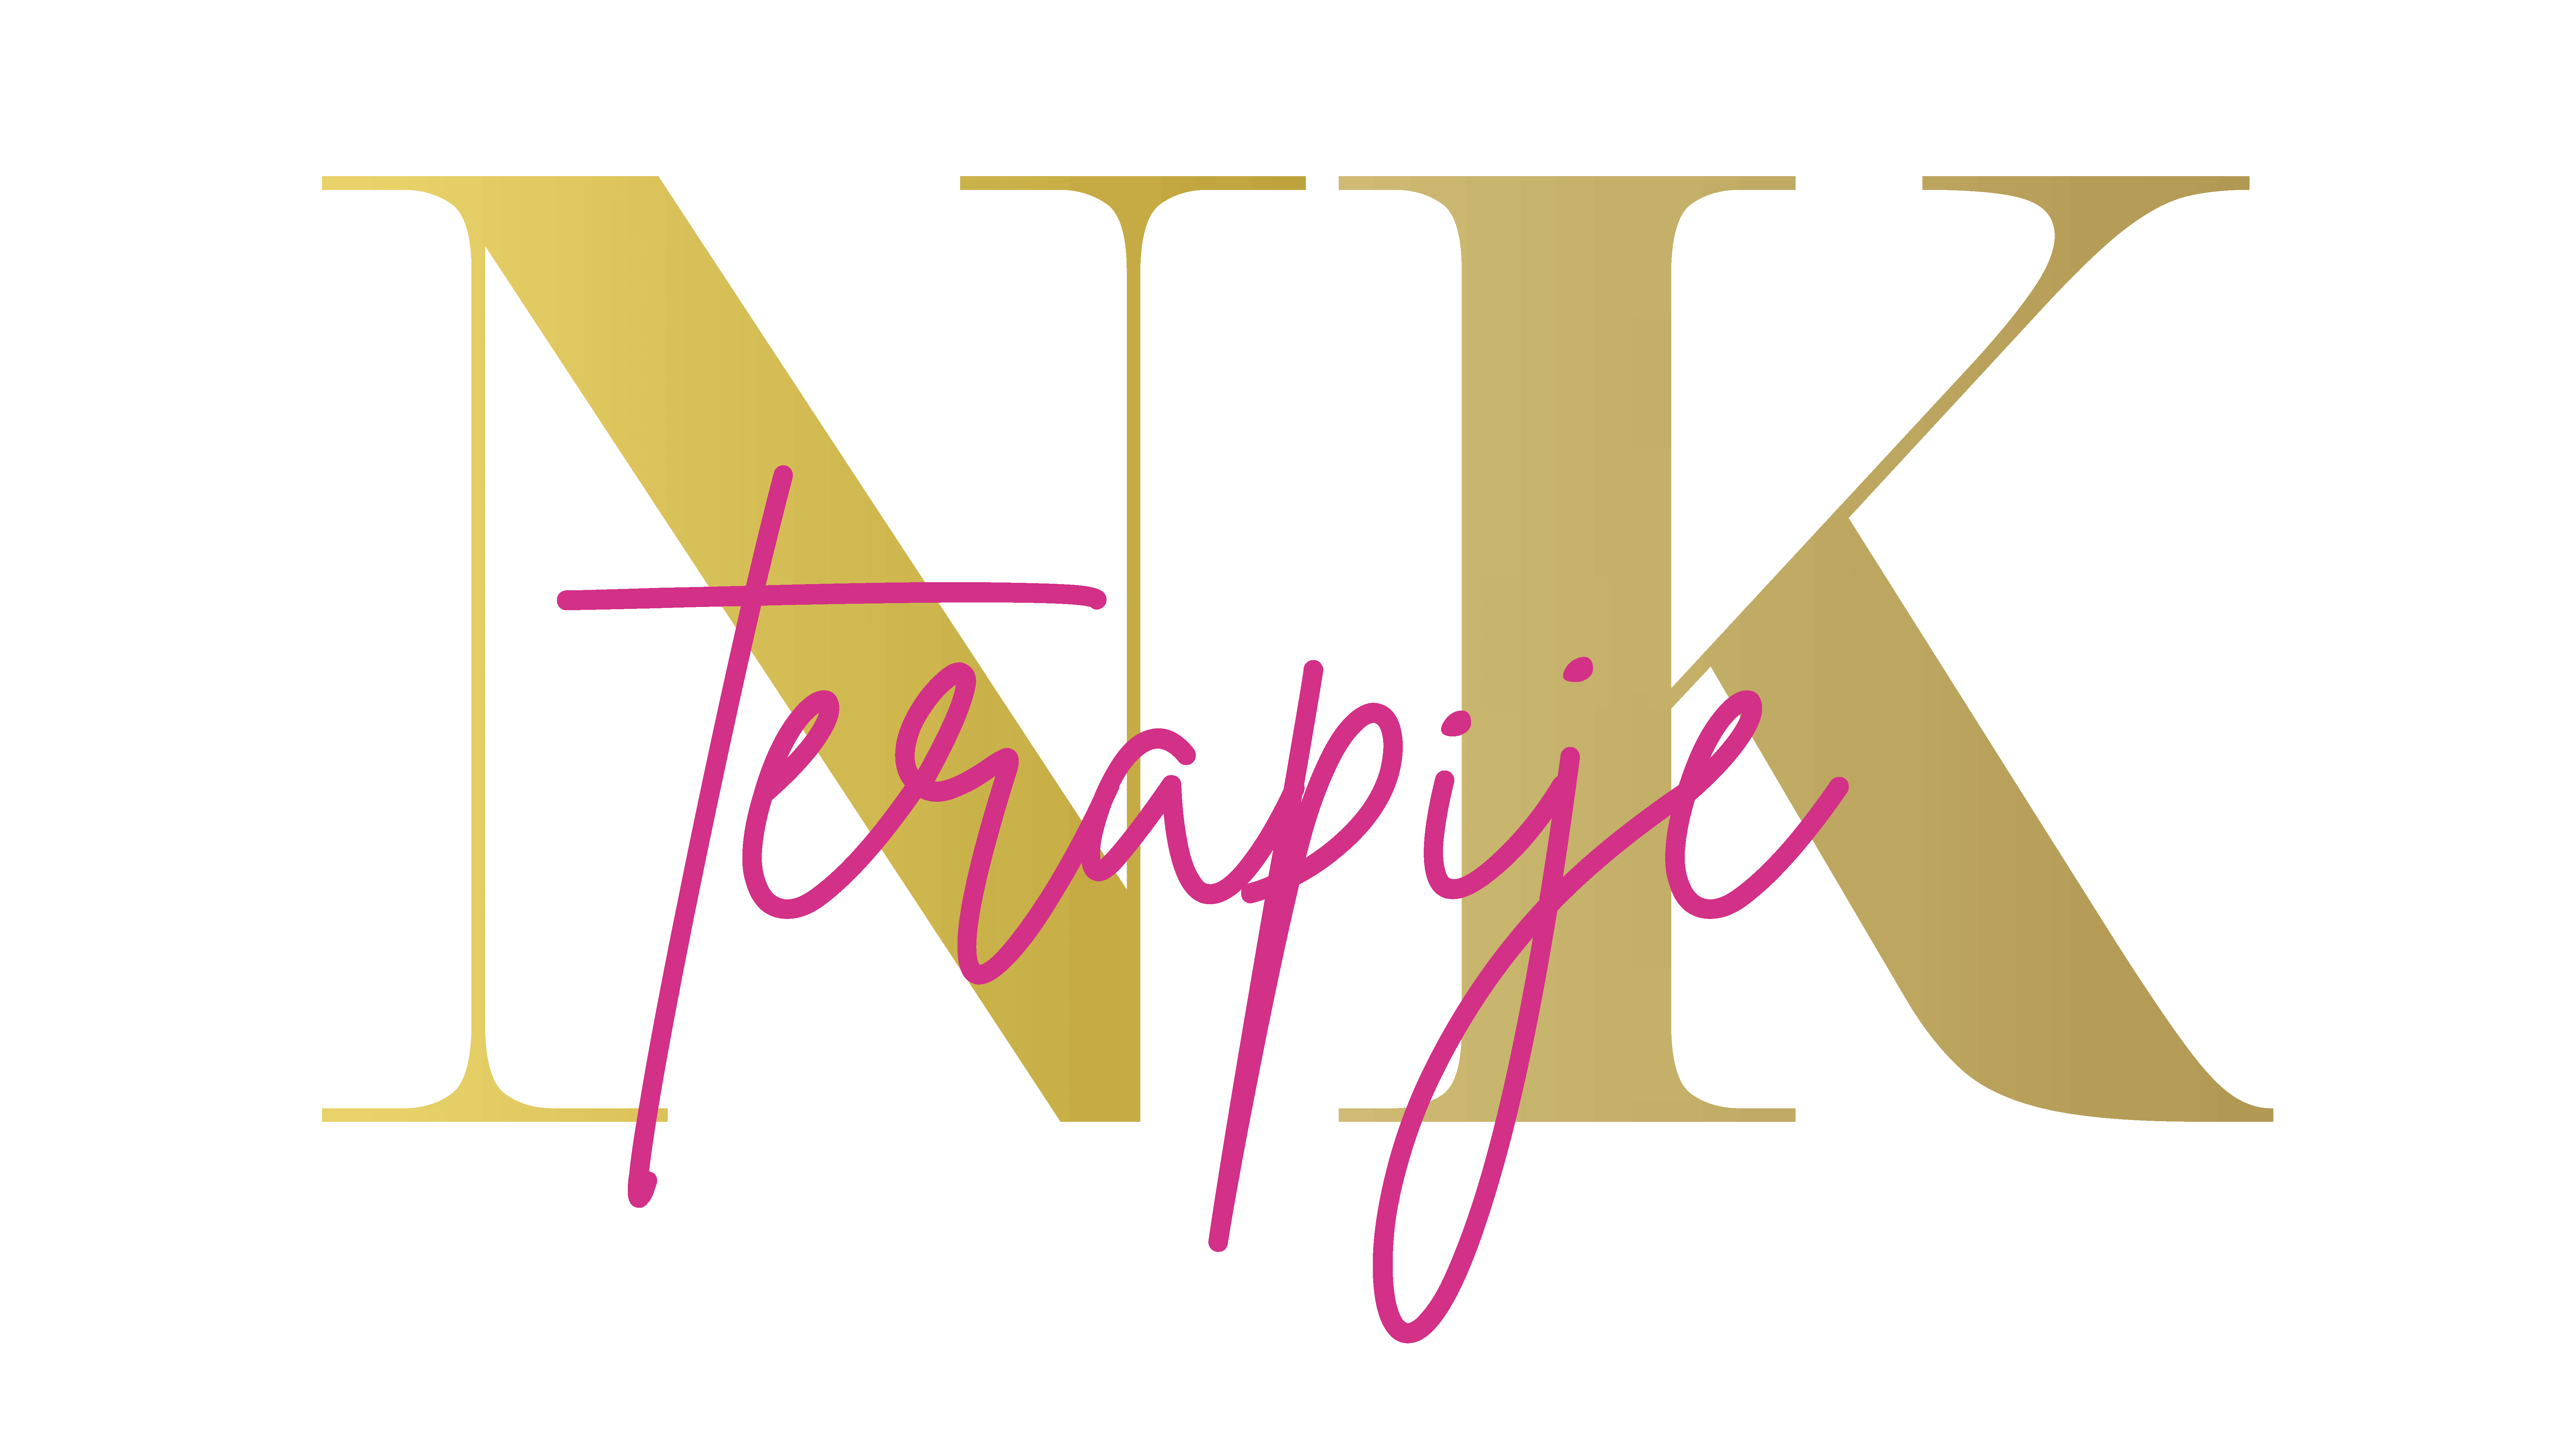 Nevenka Kamenik, logo